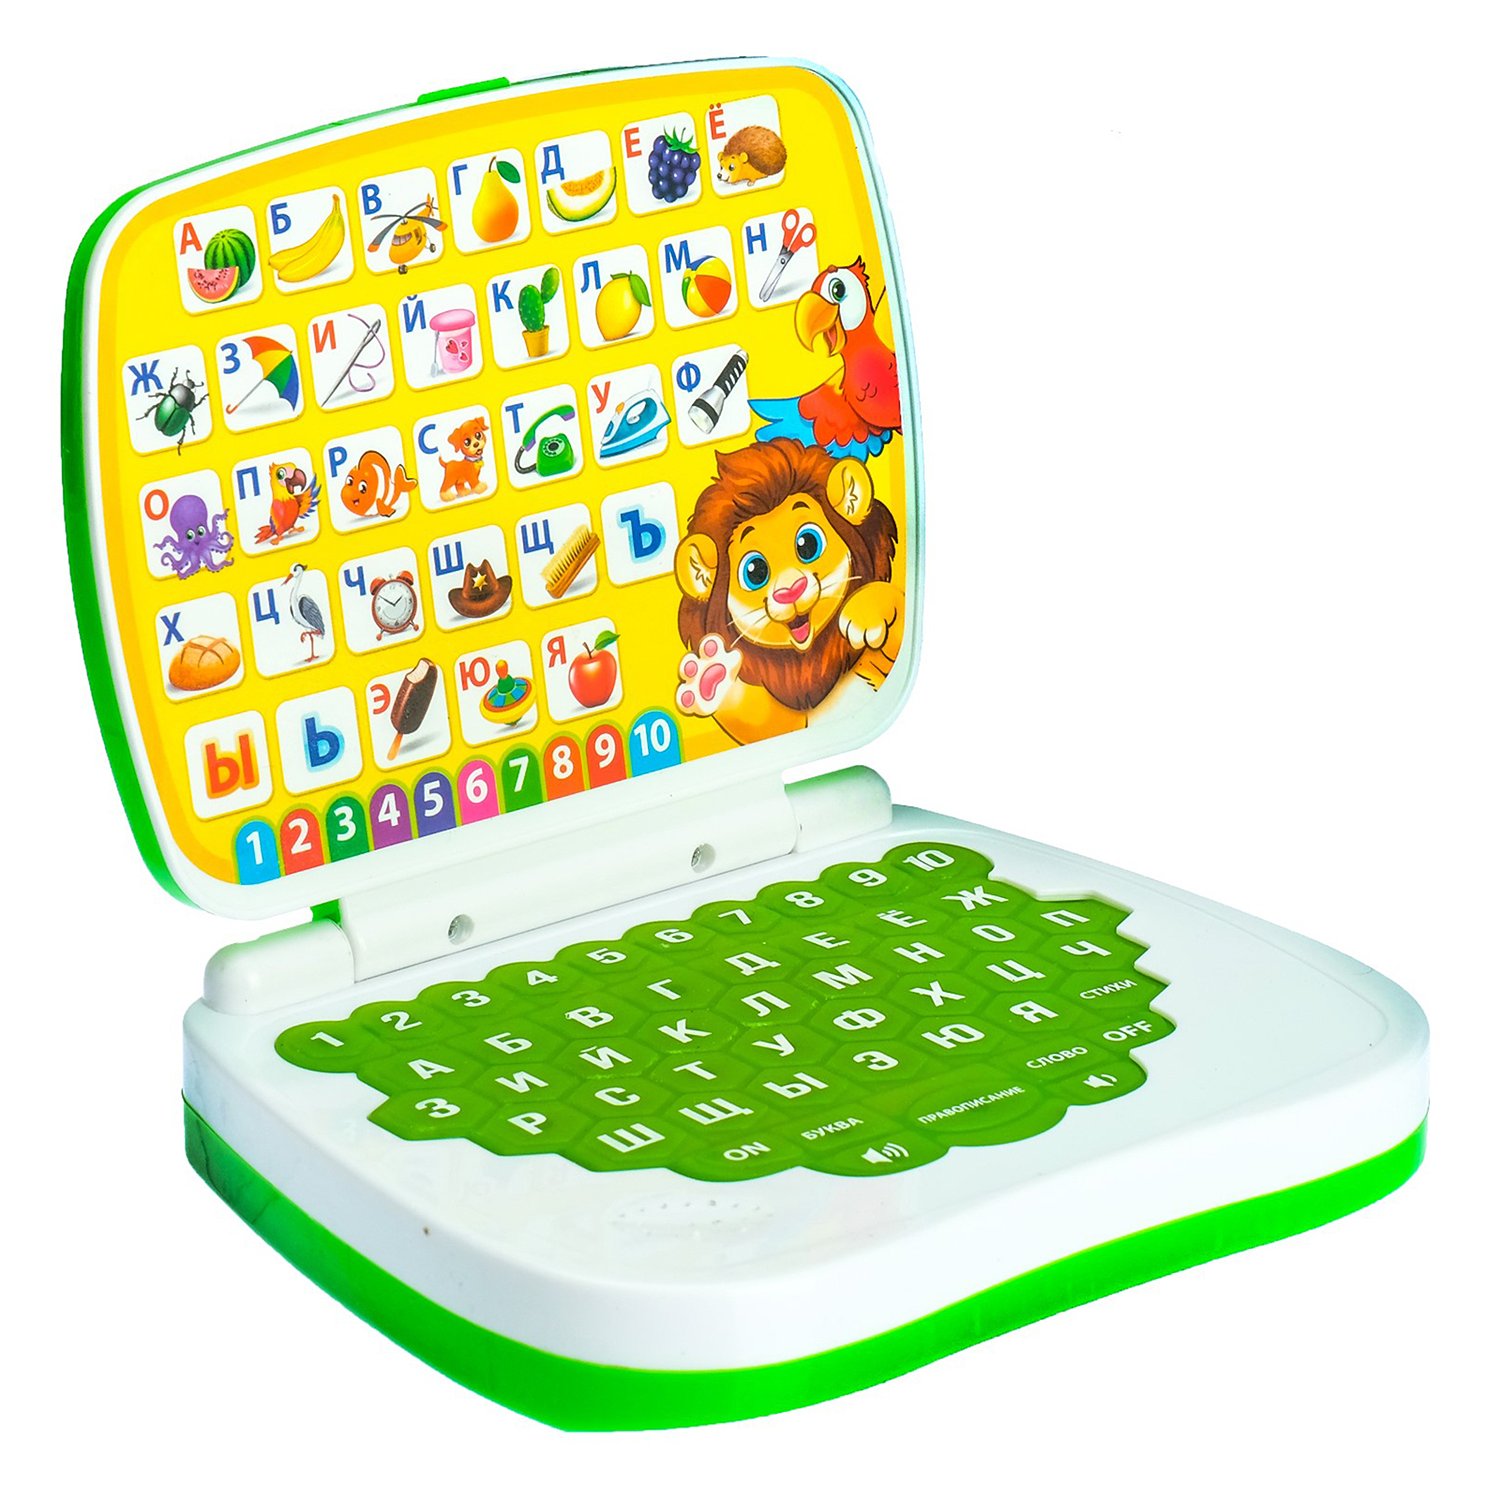 Развивающая игрушка «Умный компьютер: Джунгли»: учимся считать и писать, тренируем логику развивающая игрушка умный компьютер джунгли учимся считать и писать забияка